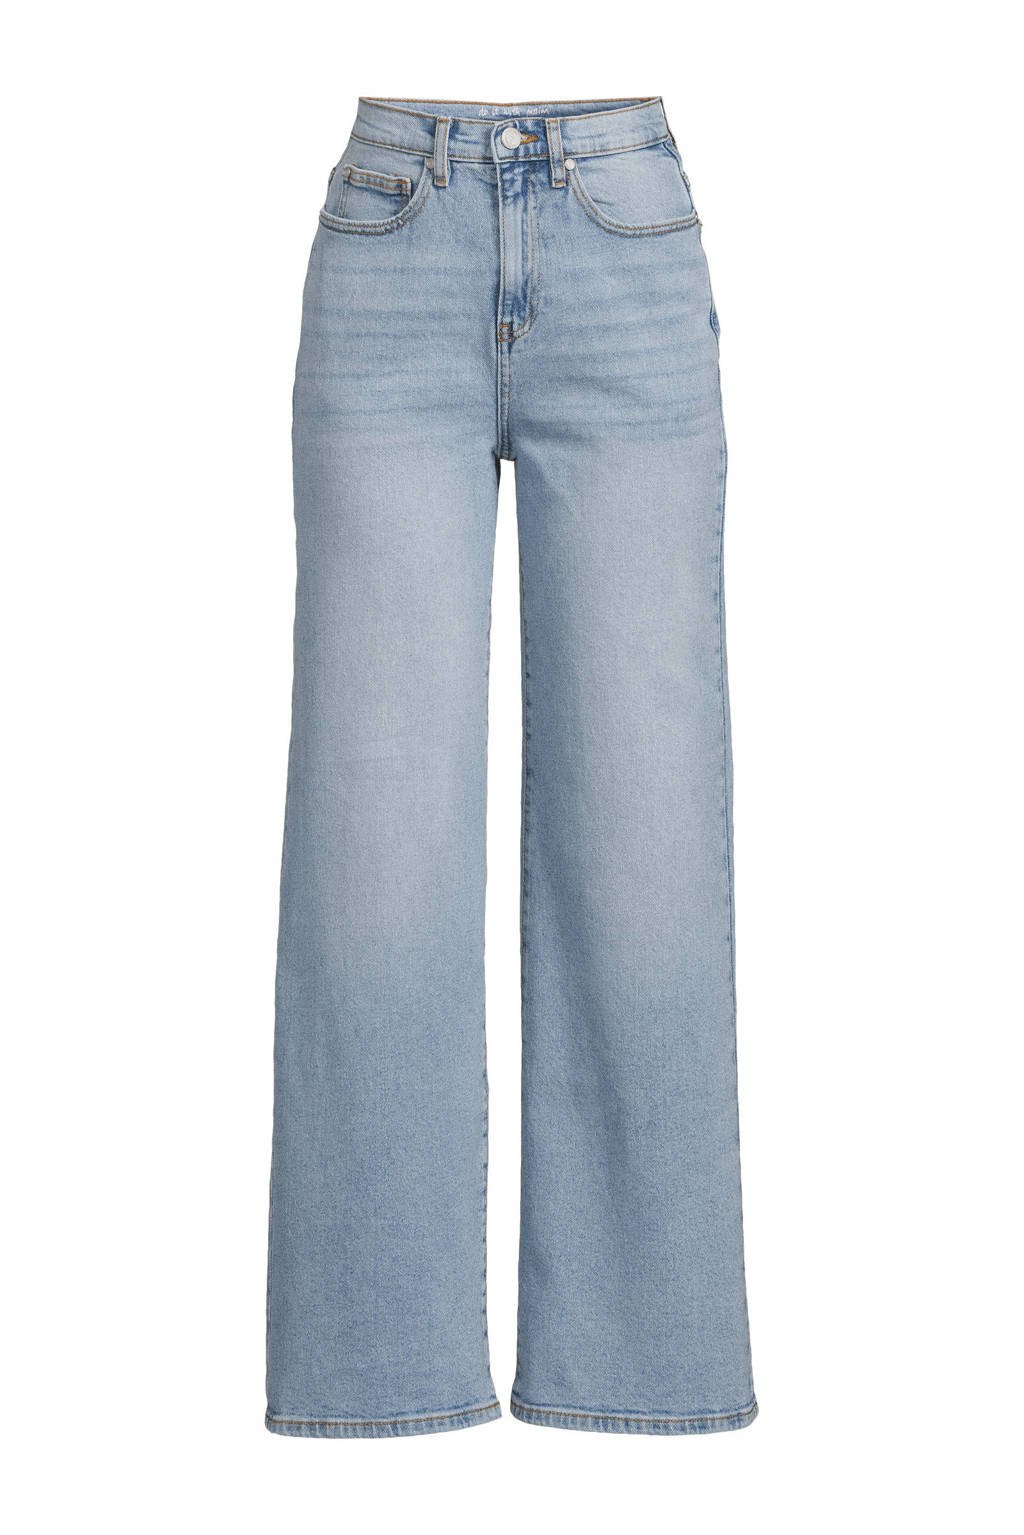 high waist wide leg jeans OWI-W light blue denim